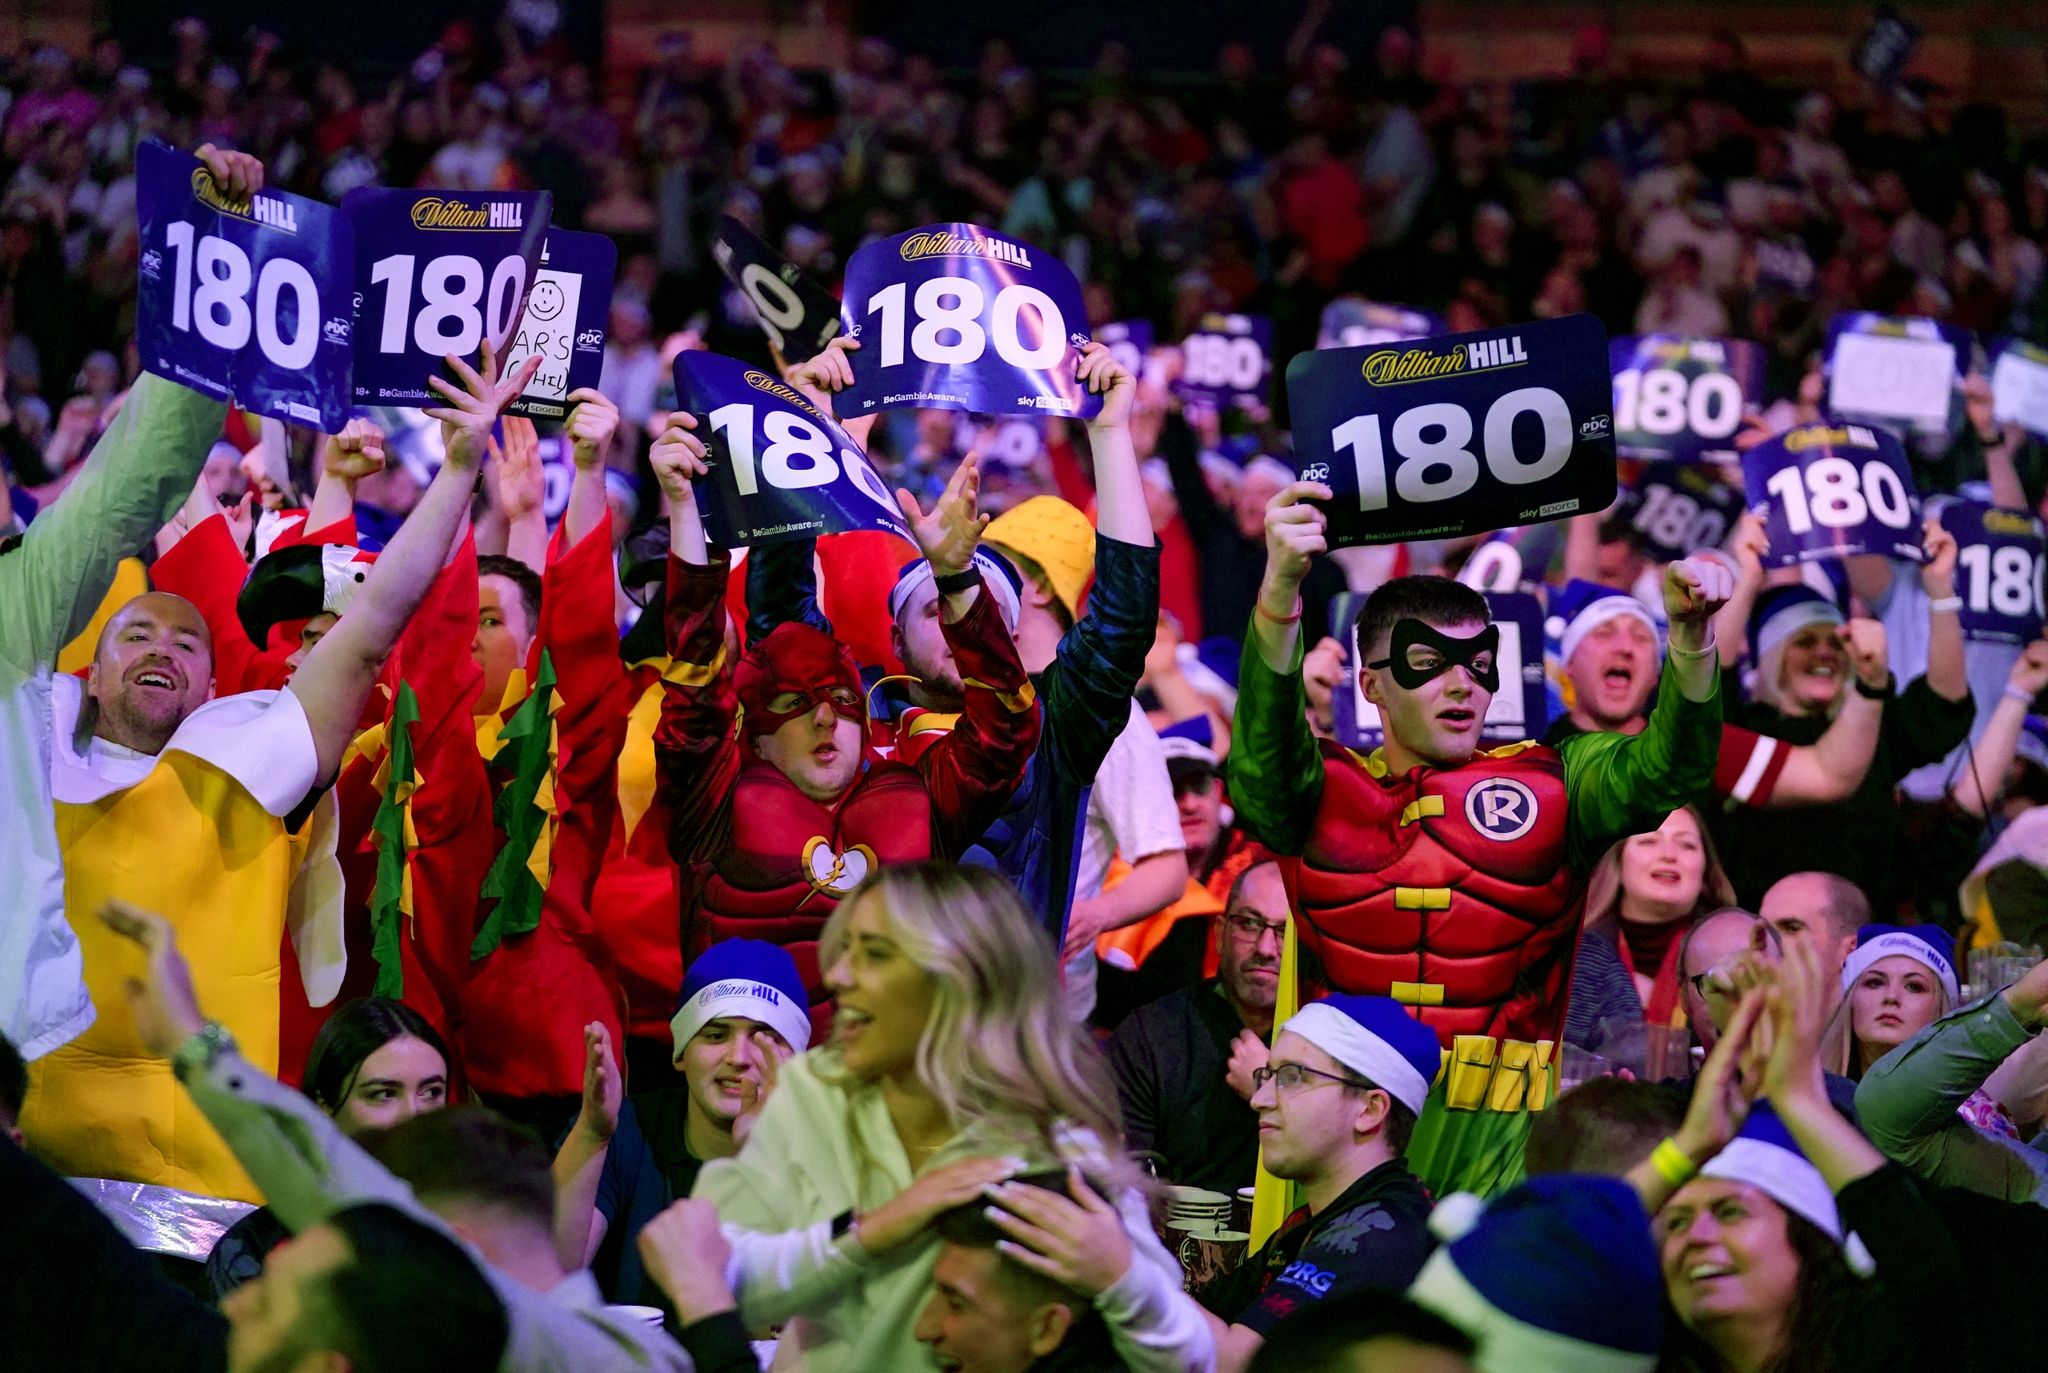 Fans in Kostümen mit 180-Schildern während einer Partie im Alexandra Palace.